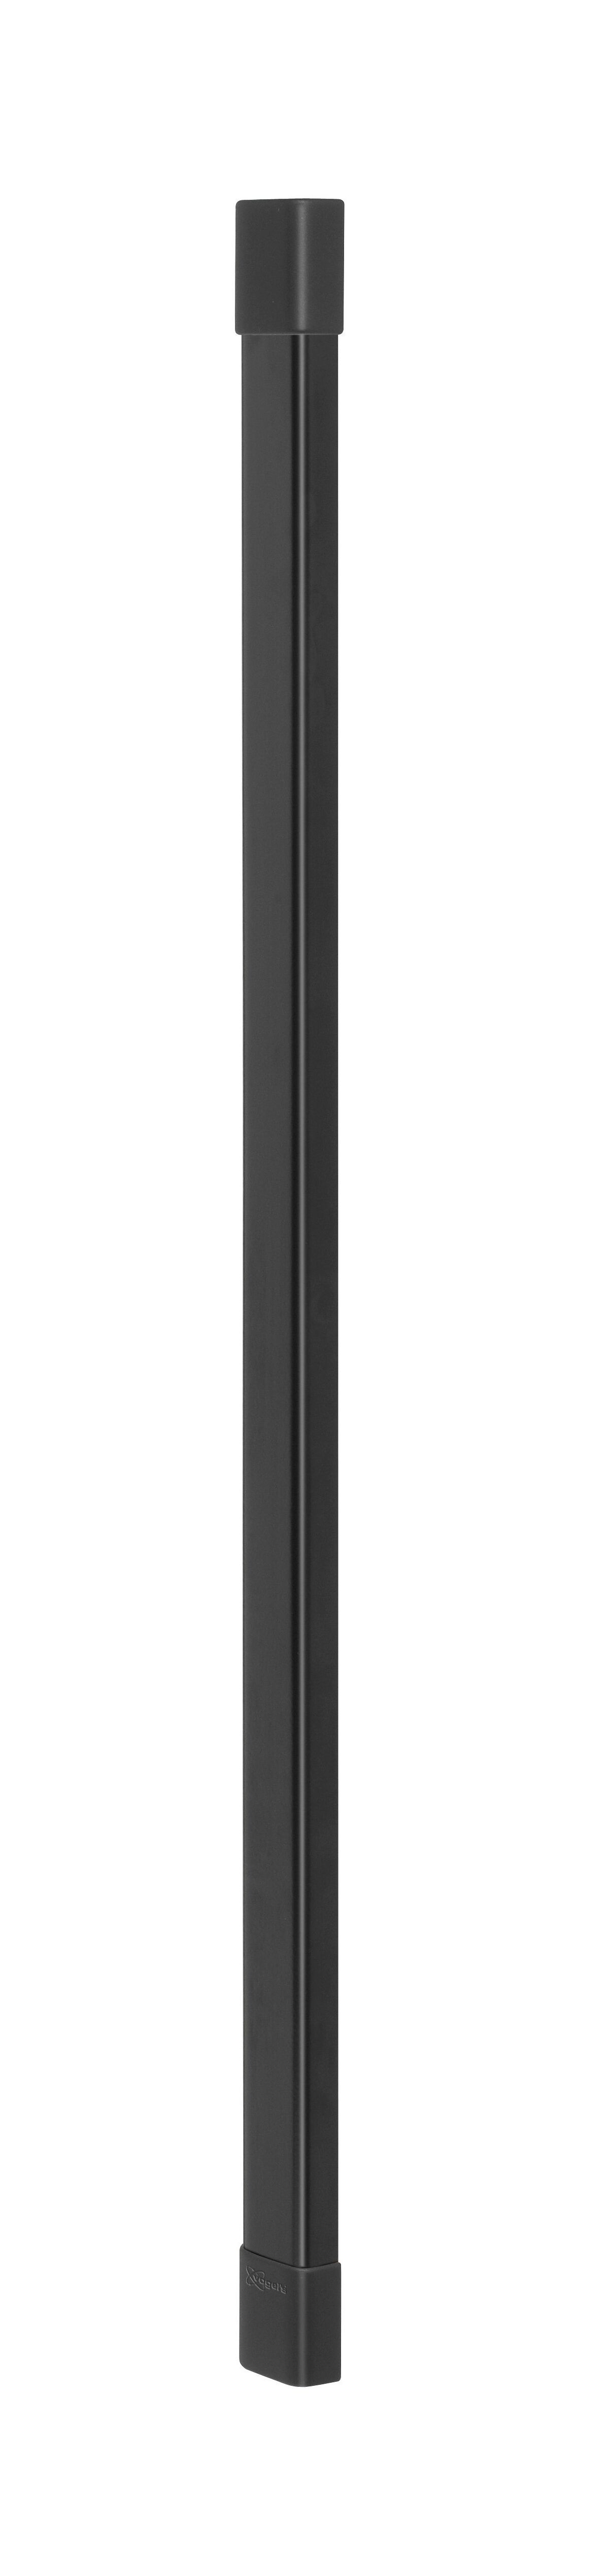 Vogel's CABLE 4 Canalina (nero) - Numero massimo di cavi da contenere: Fino a 4 cavi - Lunghezza: 94 cm - Product